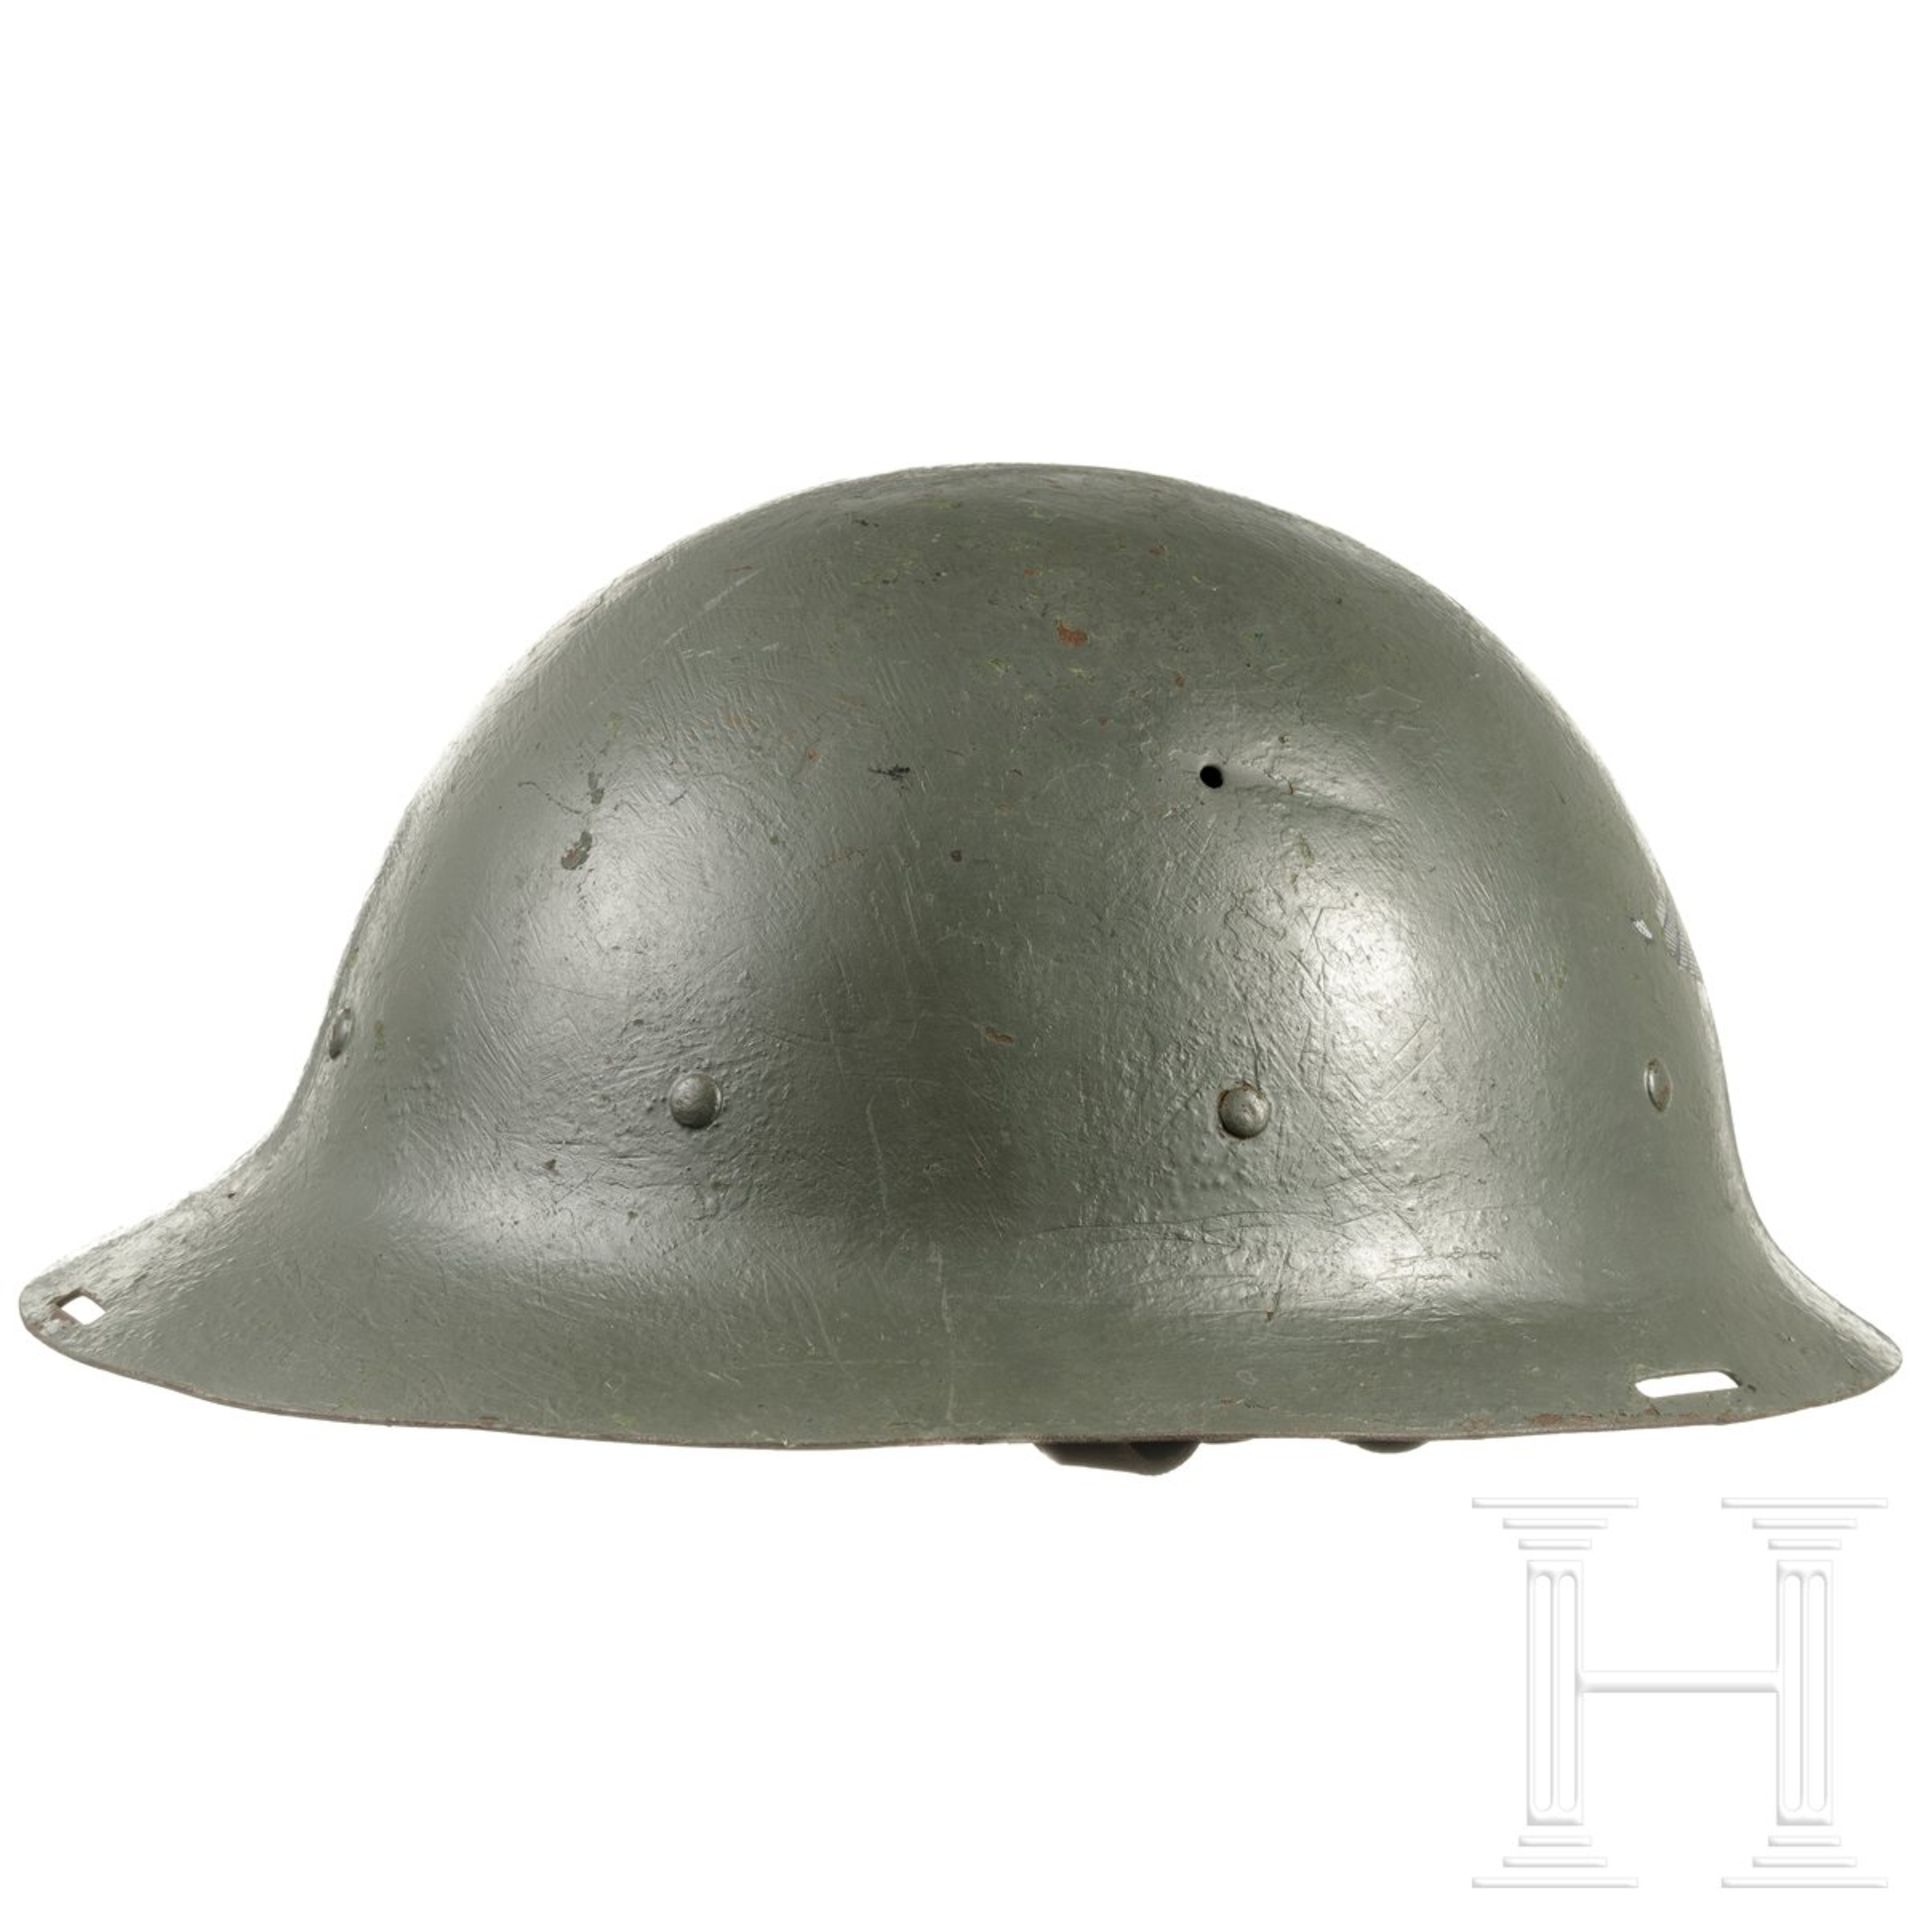 Stahlhelm mit Luftschutzemblem, deutsch, 1940er Jahre - Image 2 of 4